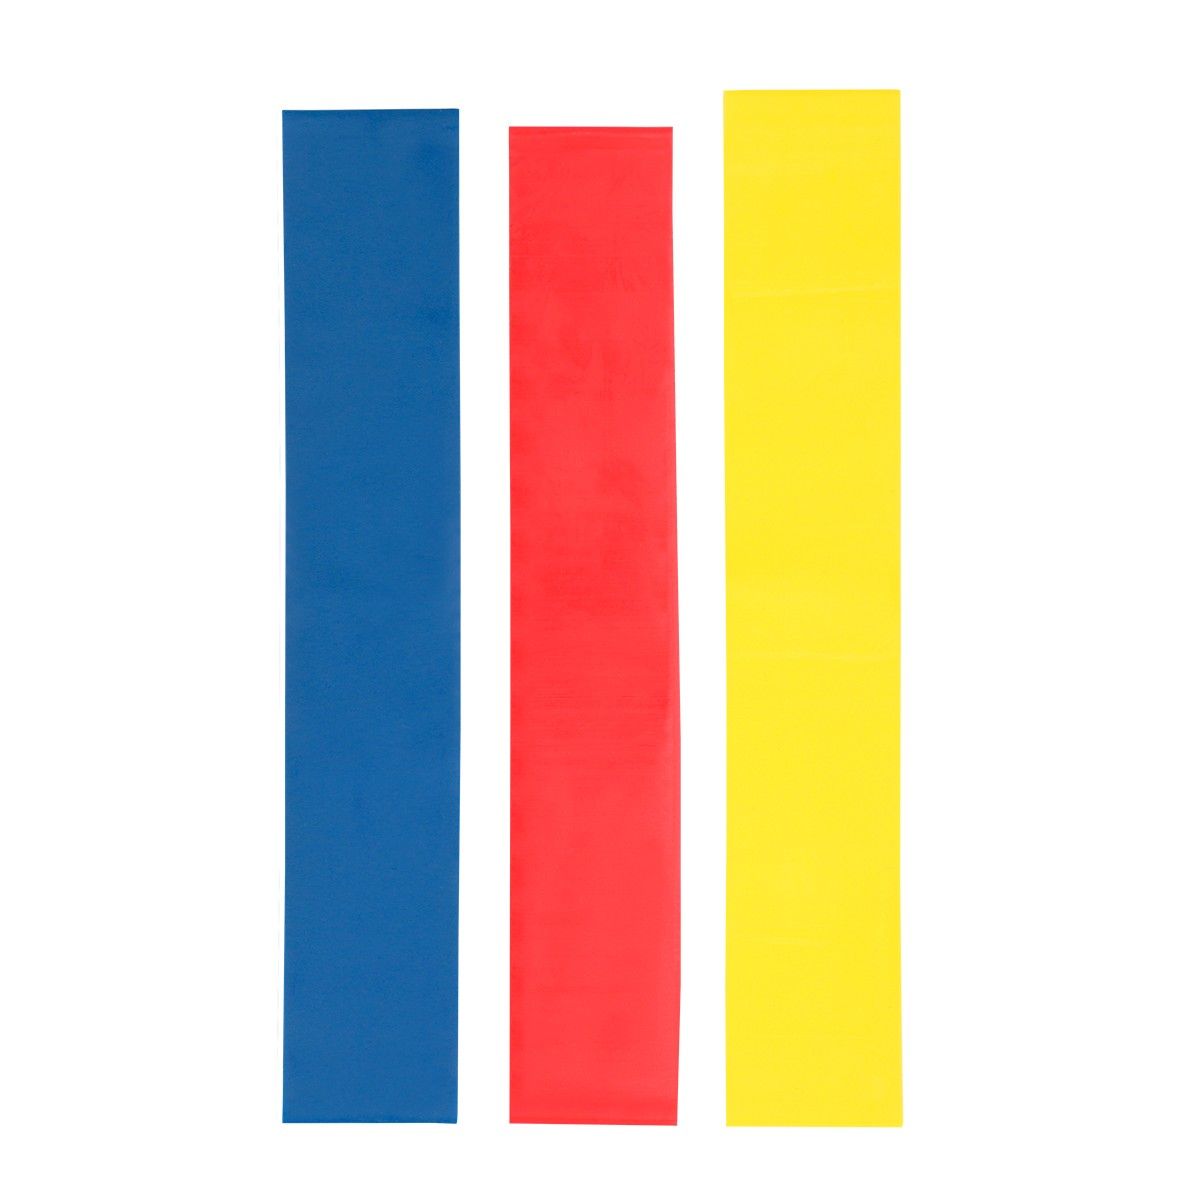 SPO 010, KIT DE BANDAS ELÁSTICAS. Set de 3 bandas elásticas con diferentes resistencias. Banda roja con resistencia alta, banda amarilla con resistencia media y banda azul con resistencia baja. Incluye bolsa con jareta.